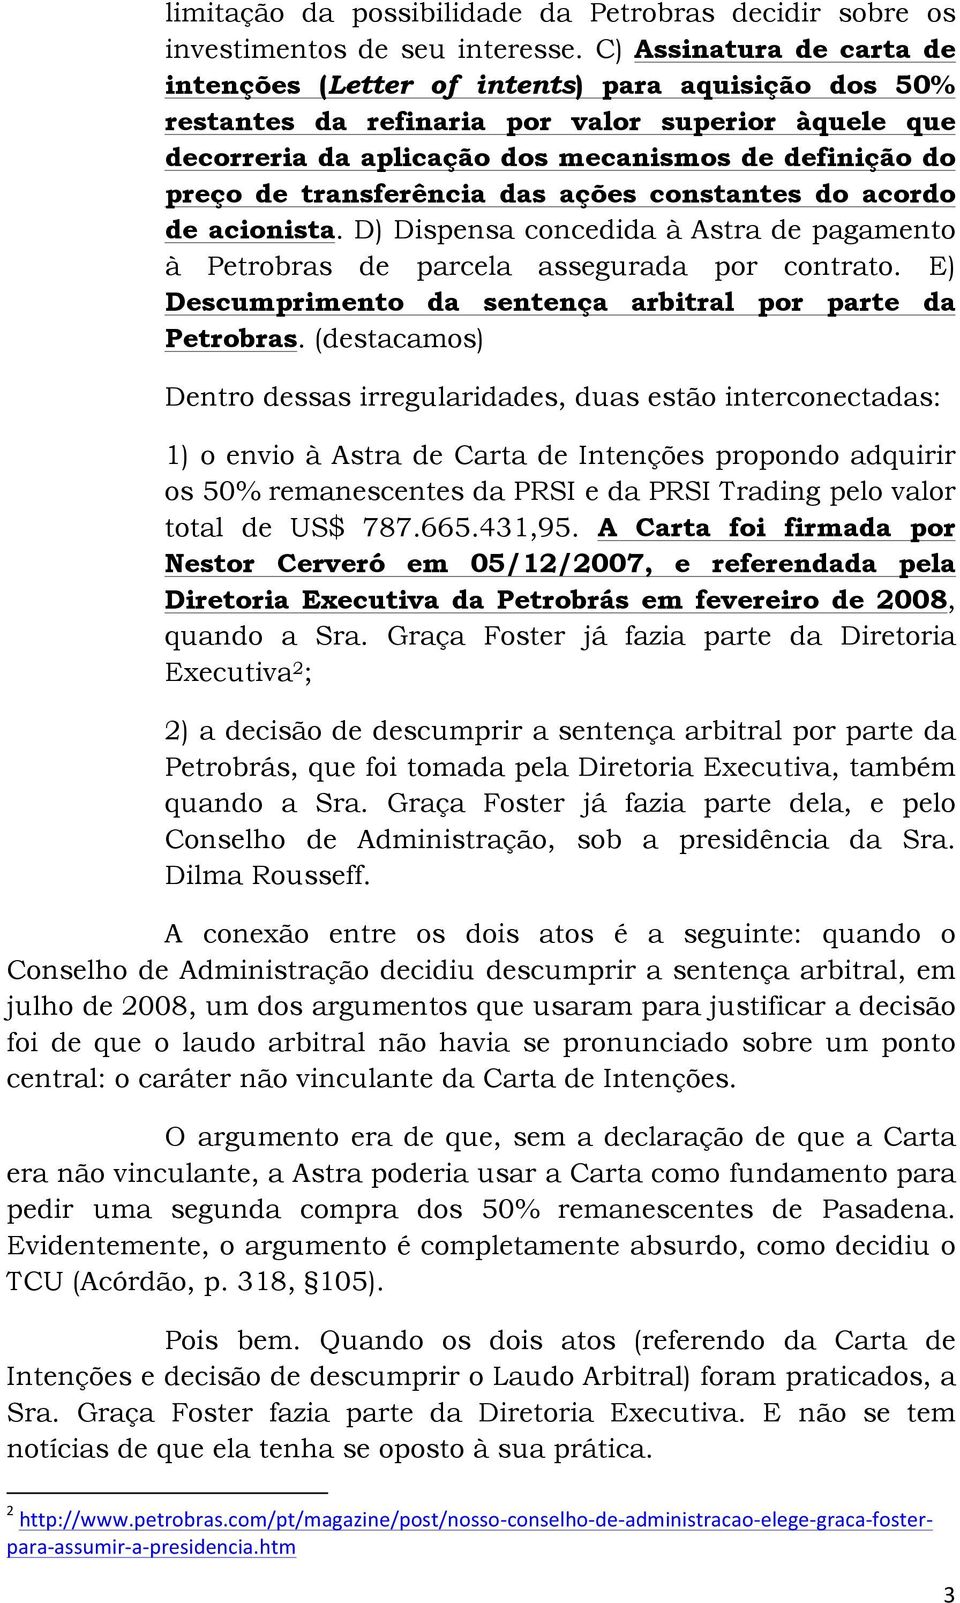 transferência das ações constantes do acordo de acionista. D) Dispensa concedida à Astra de pagamento à Petrobras de parcela assegurada por contrato.